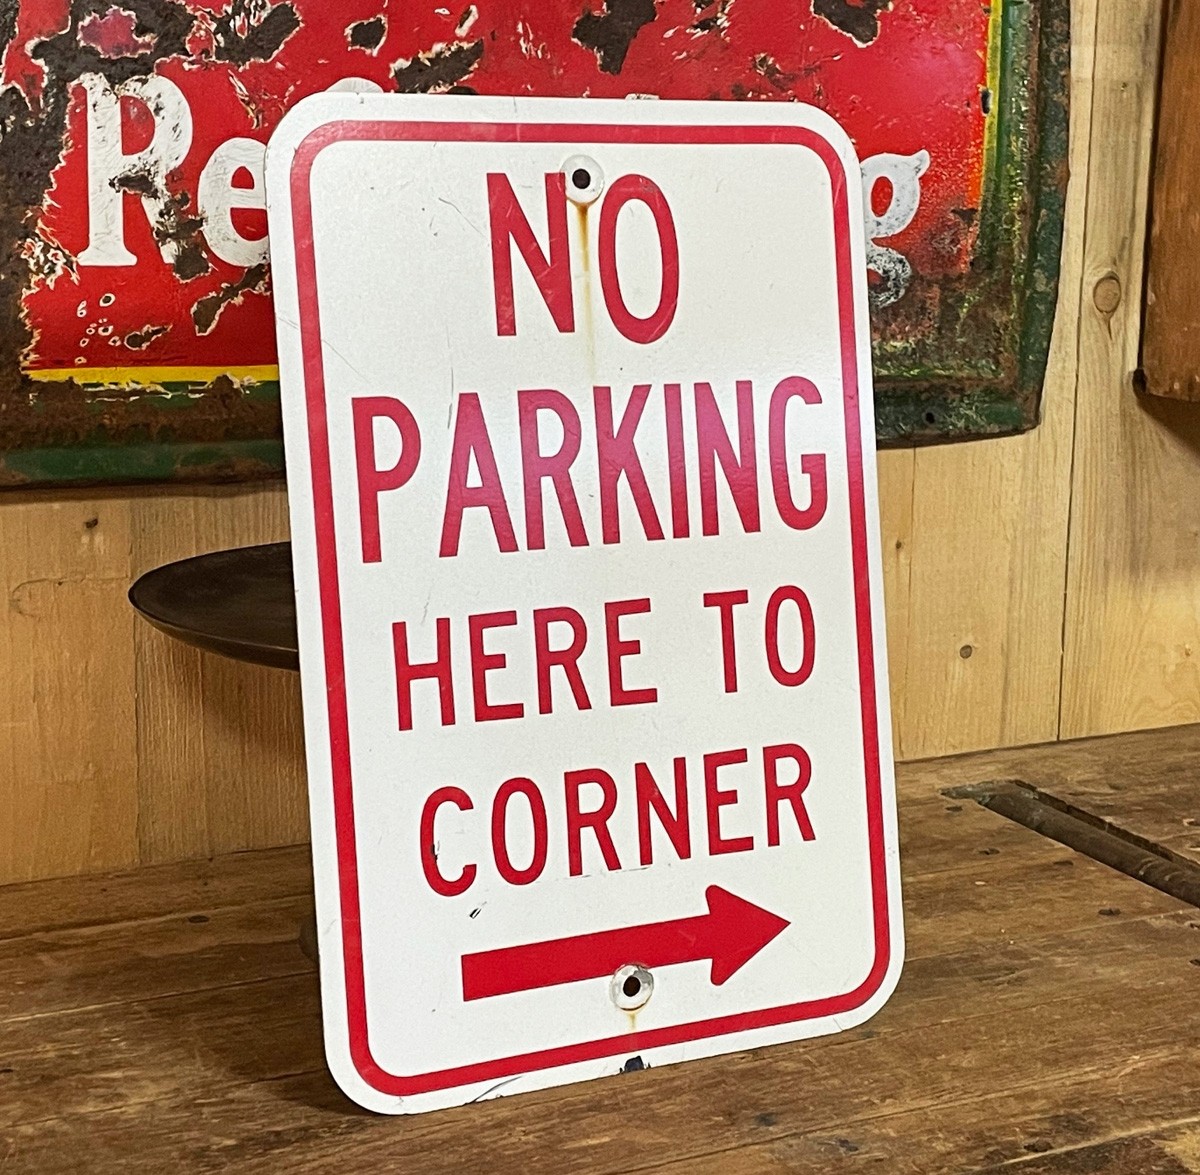 No Parking Here to Corner Verkehrsschild